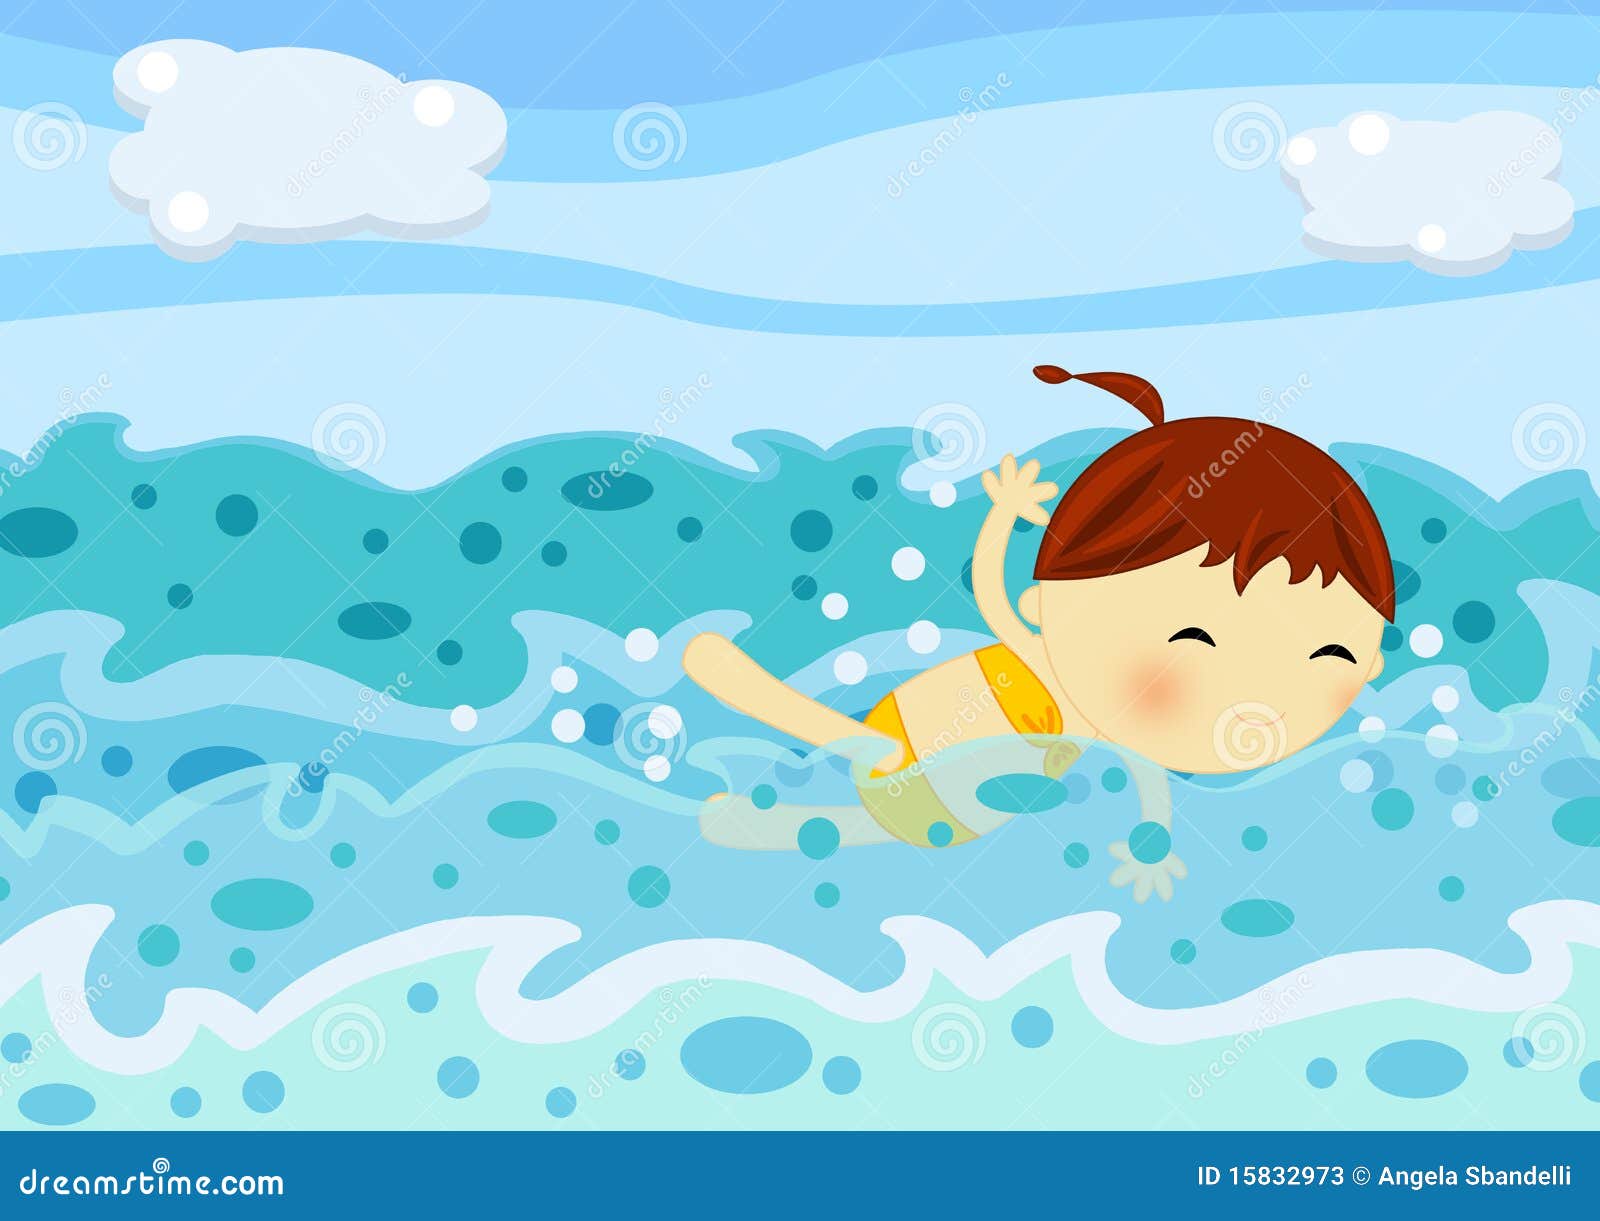 Переведи на английский плавать. Плавать в море. Плавать в море рисунок. Мальчик плавает в море. Плавать в море картинка для детей.